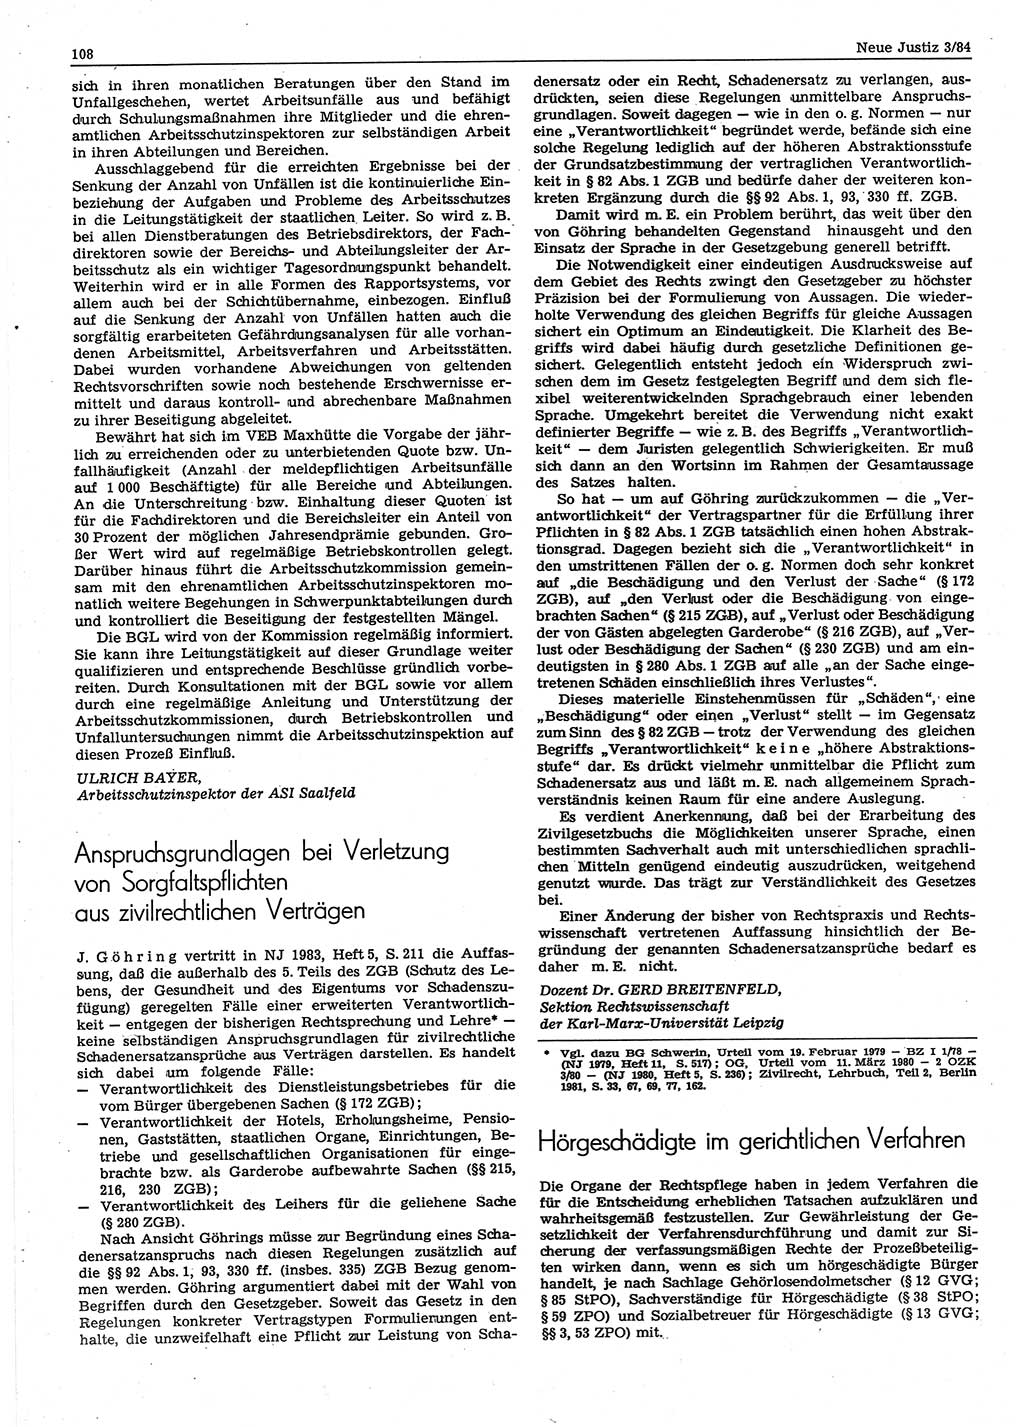 Neue Justiz (NJ), Zeitschrift für sozialistisches Recht und Gesetzlichkeit [Deutsche Demokratische Republik (DDR)], 38. Jahrgang 1984, Seite 108 (NJ DDR 1984, S. 108)